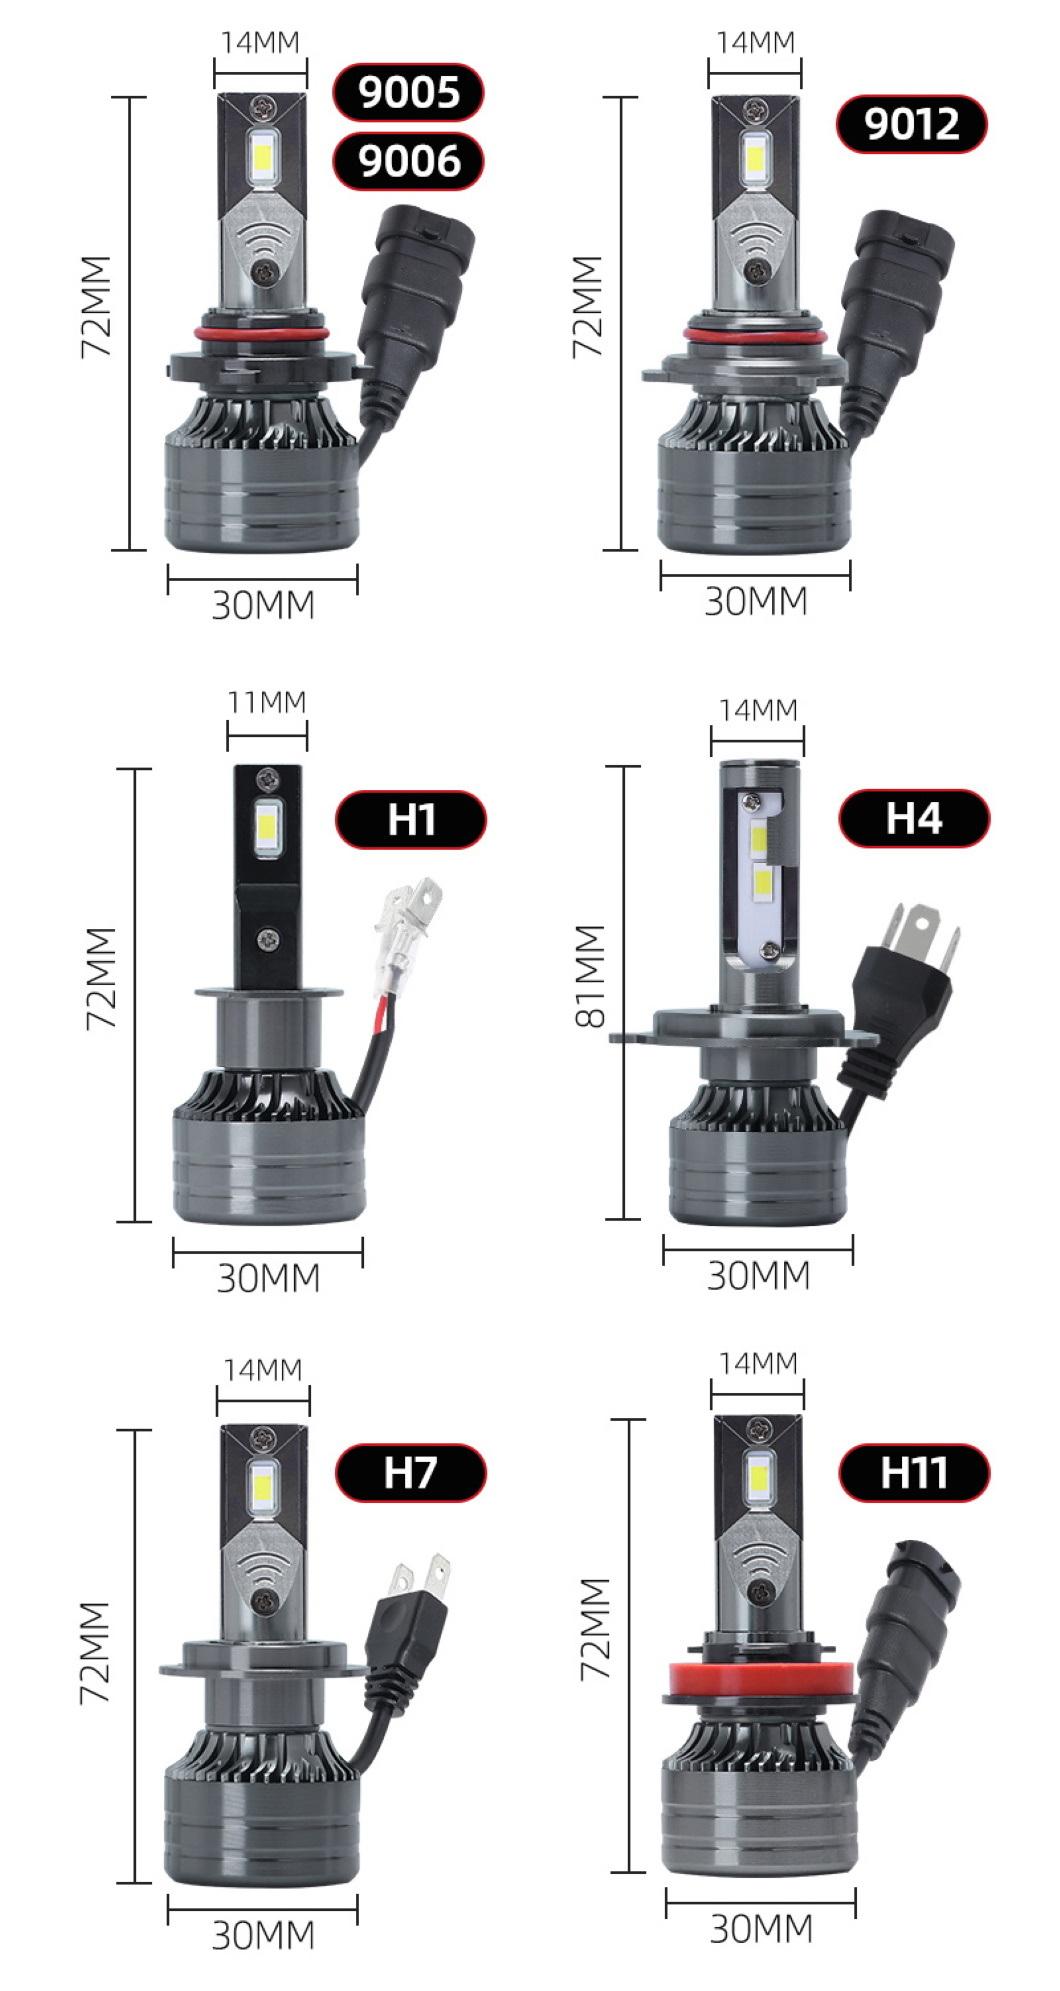 Hot Sale LED Headlight Kits 9005 9006 9012 H1 Head Light Bulb Auto Car H7 Car Bulb LED H7 Headlight